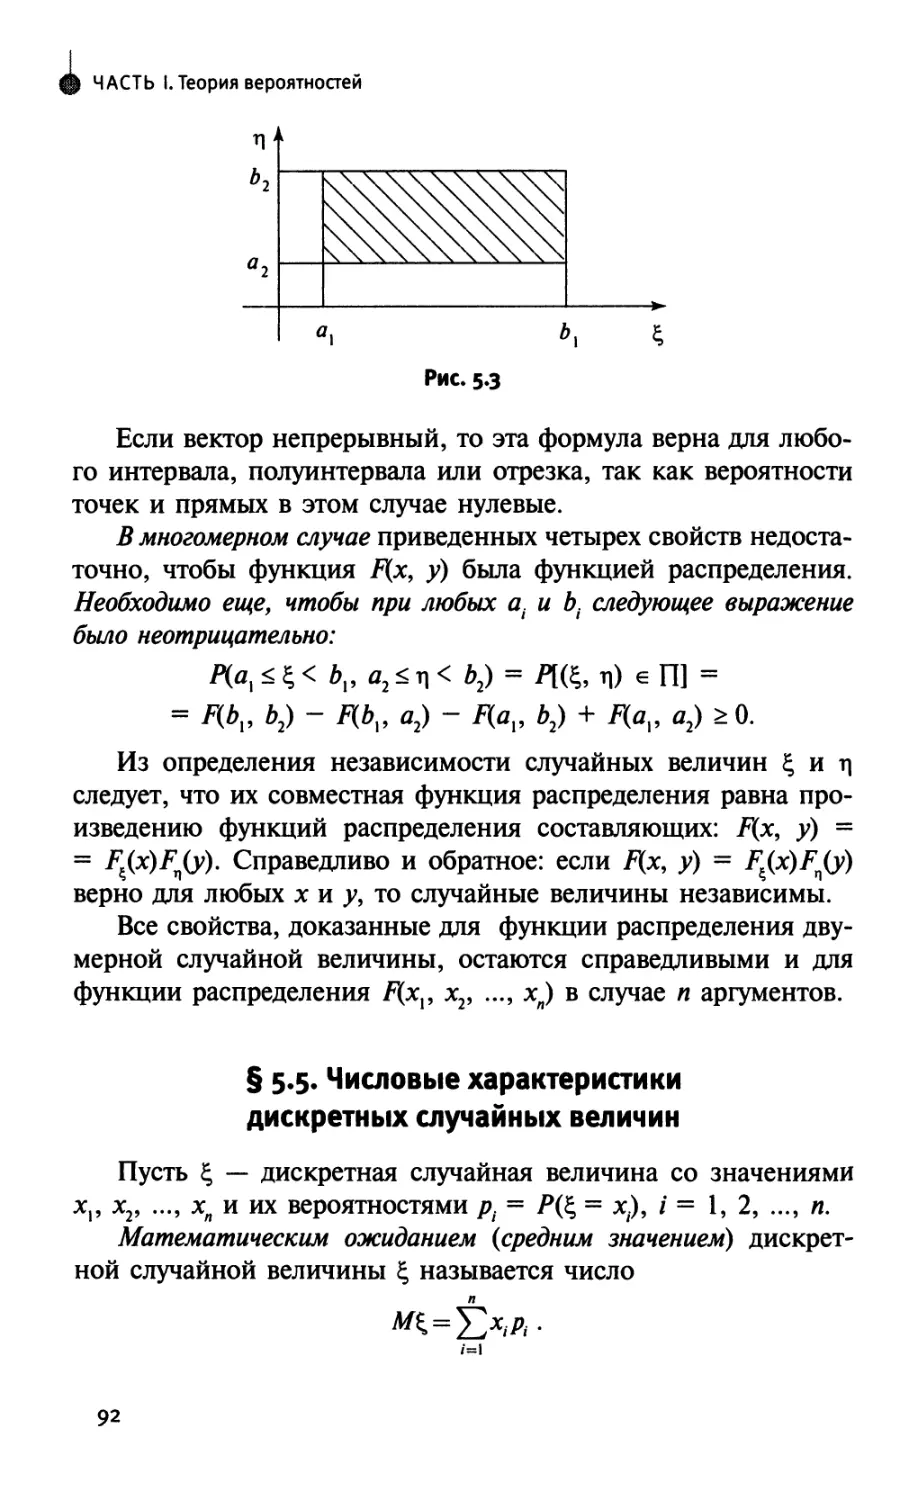 § 5.5. Числовые характеристики дискретных случайных величин